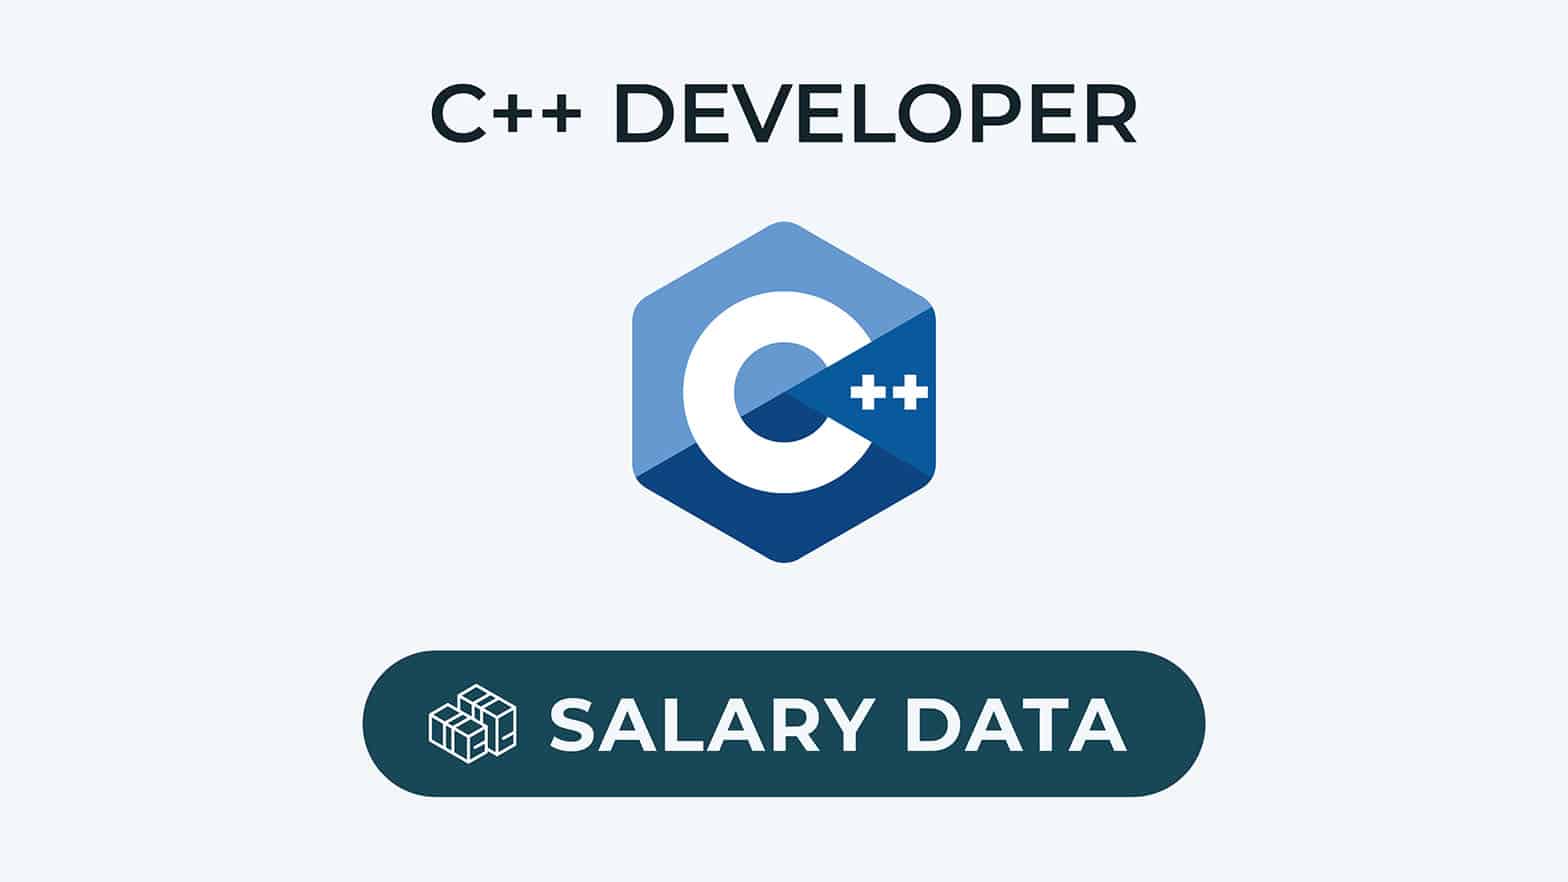 Complete C++ developer salary data